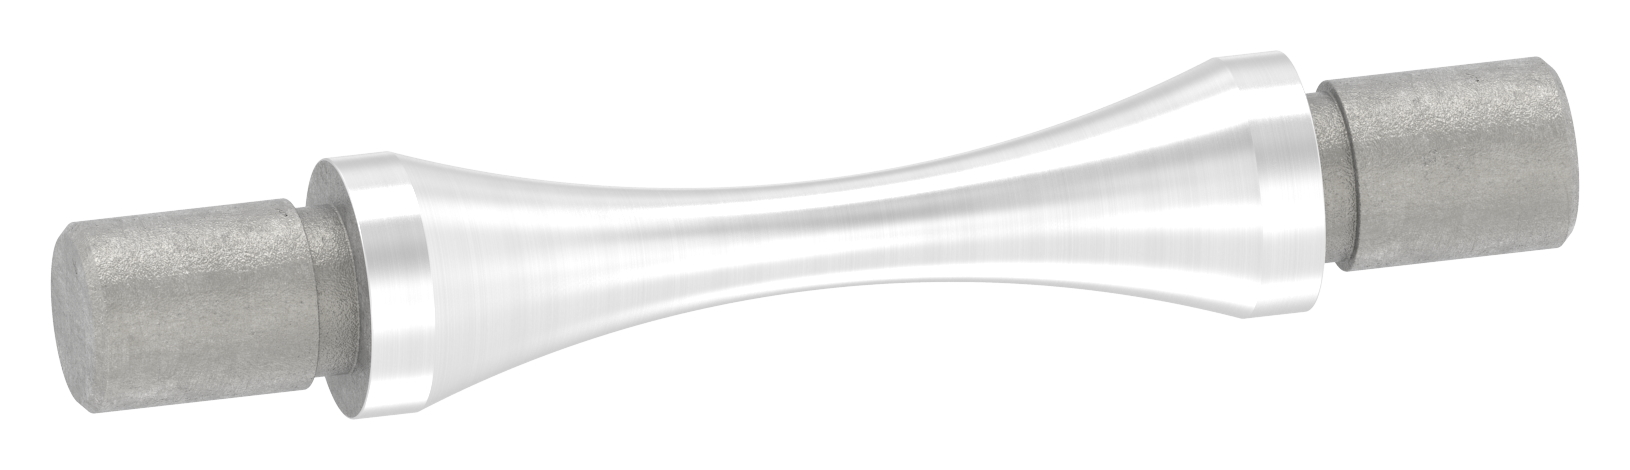 Rohrverbinder (à plier), für Rohr 12x1,5mm, V2A